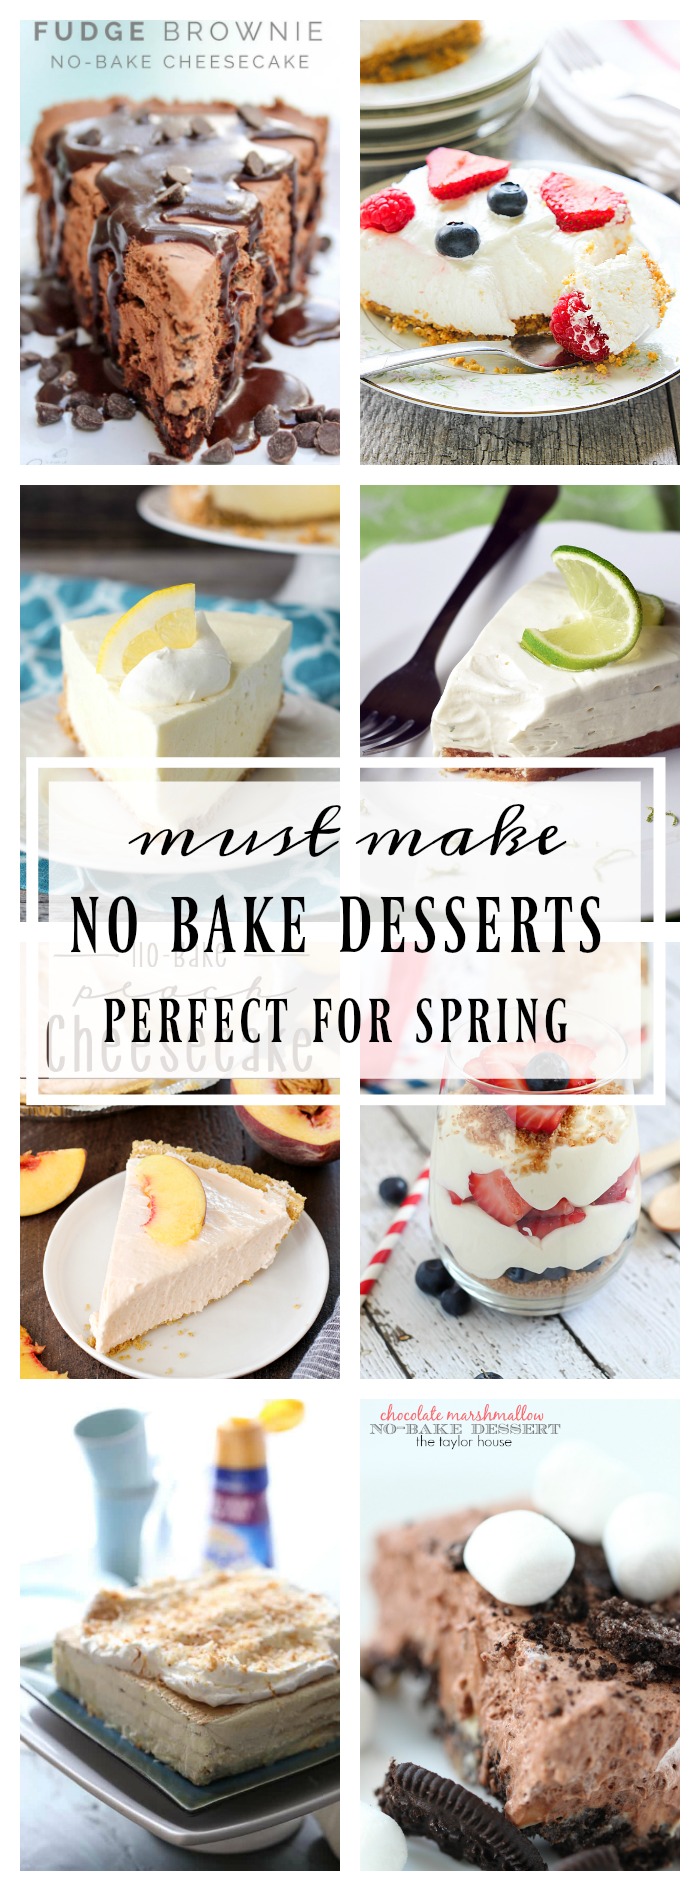 no bake recipes for spring